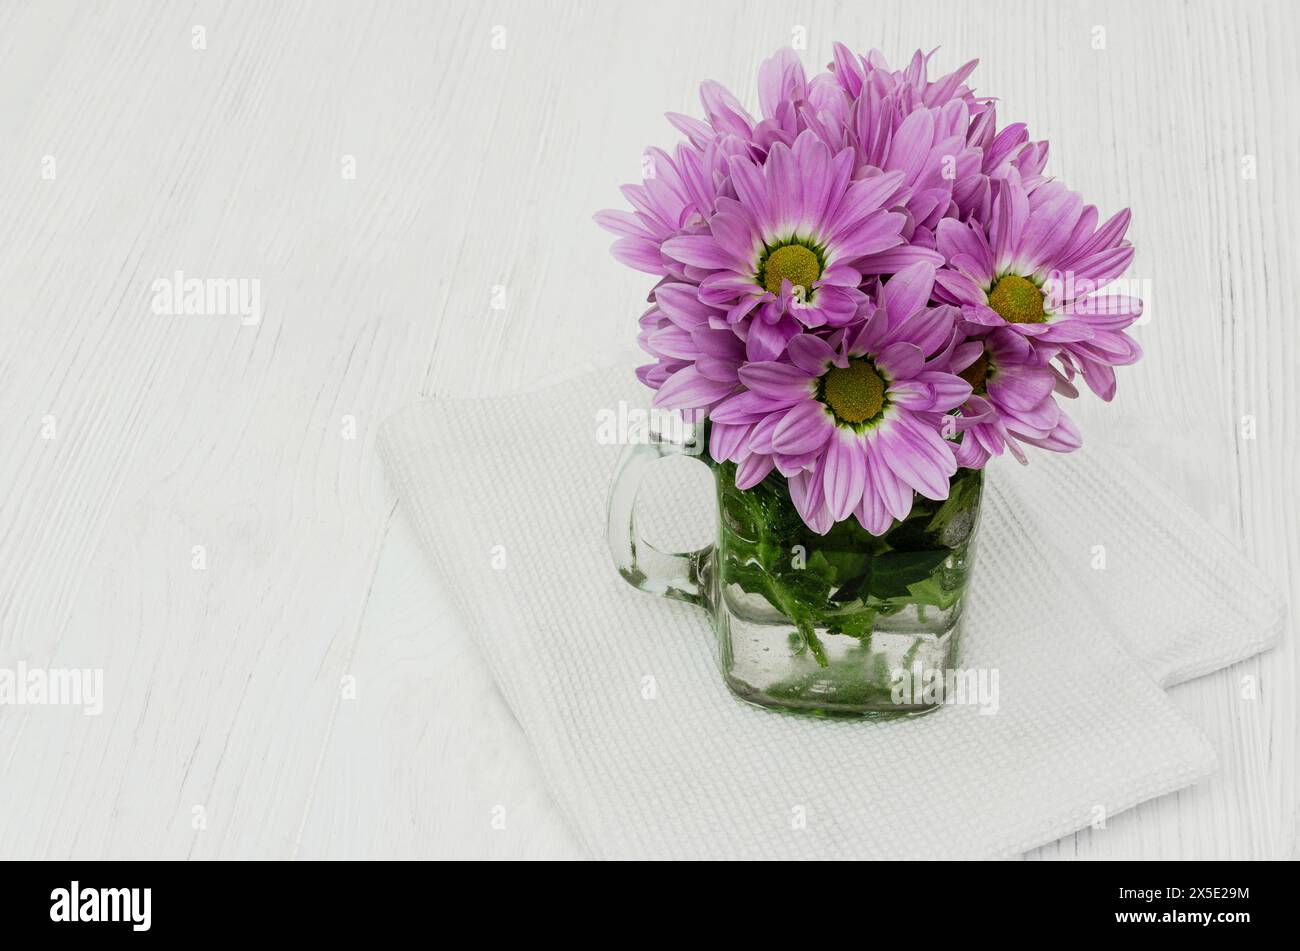 Un vase en verre transparent rempli d'eau se trouve sur une table blanche. Le vase contient un bouquet de fleurs de chrysanthème violettes avec des tiges et des feuilles vertes. Banque D'Images